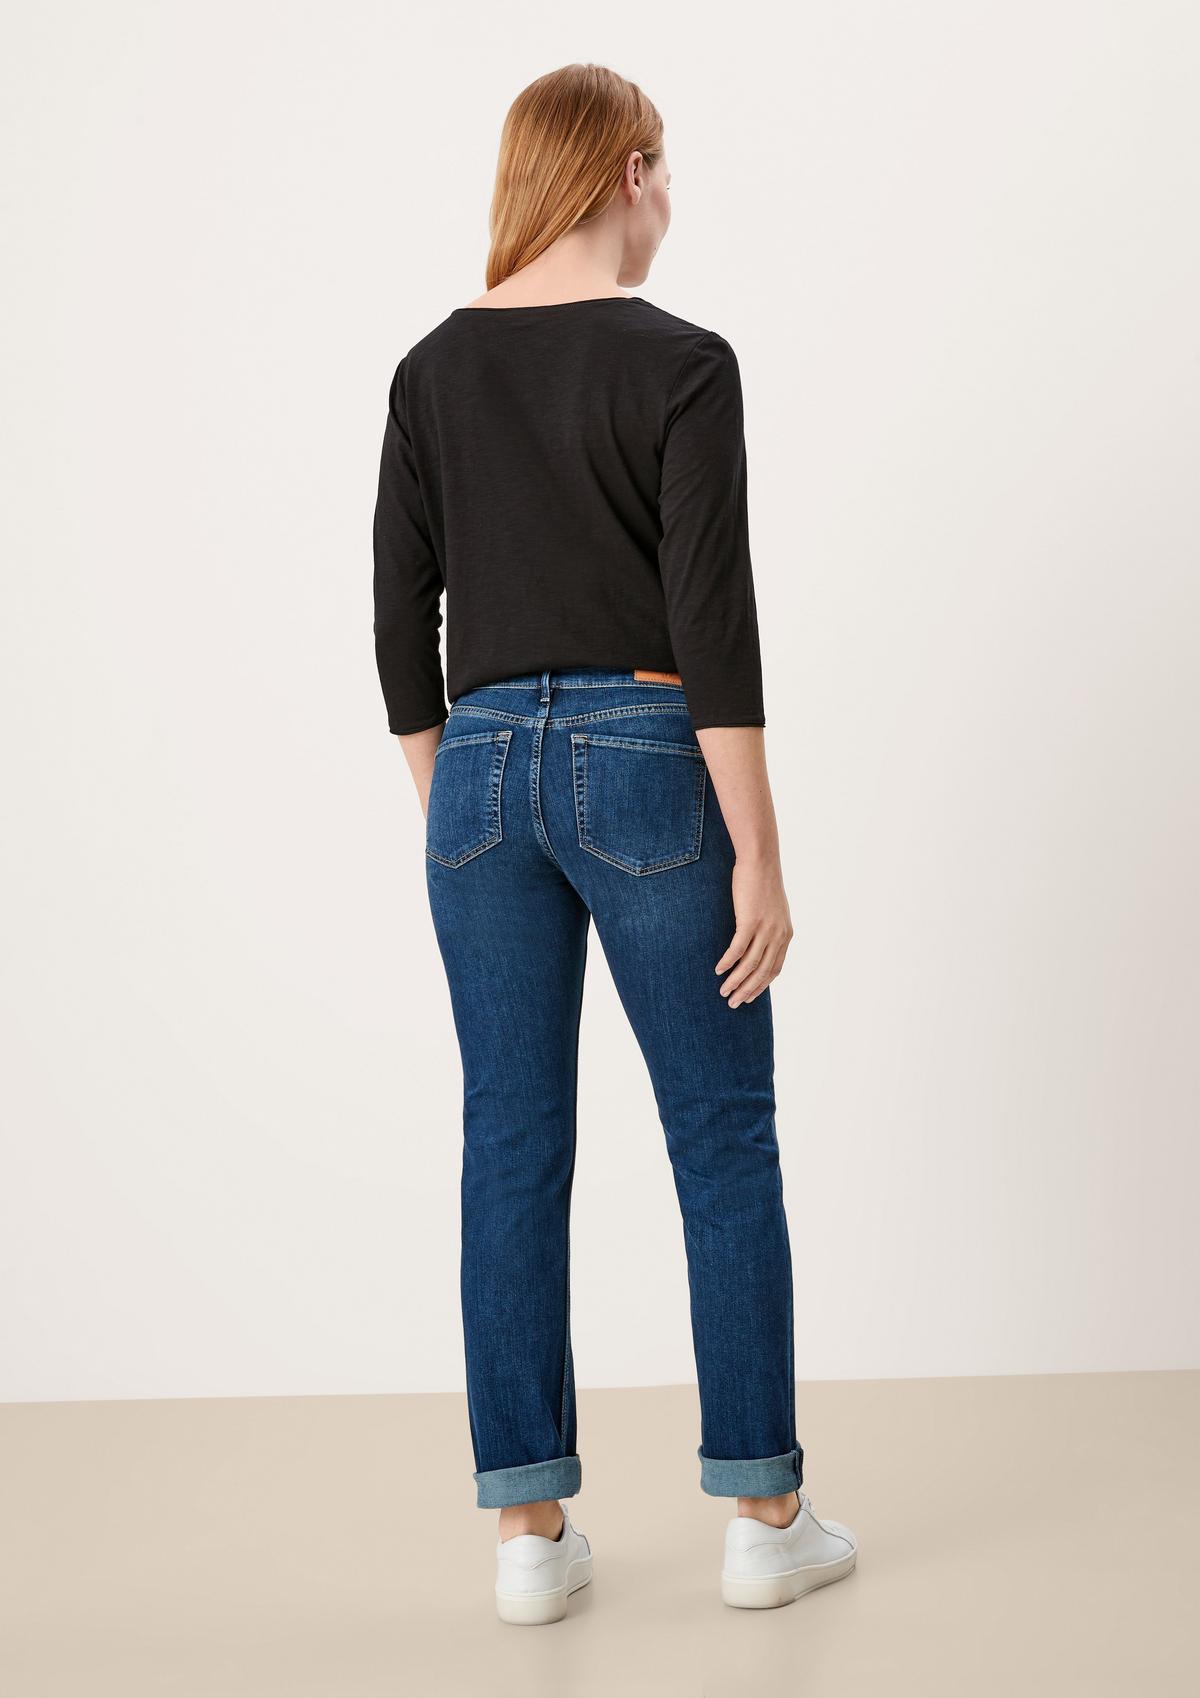 s.Oliver Regular: džíny s rovnými nohavicemi